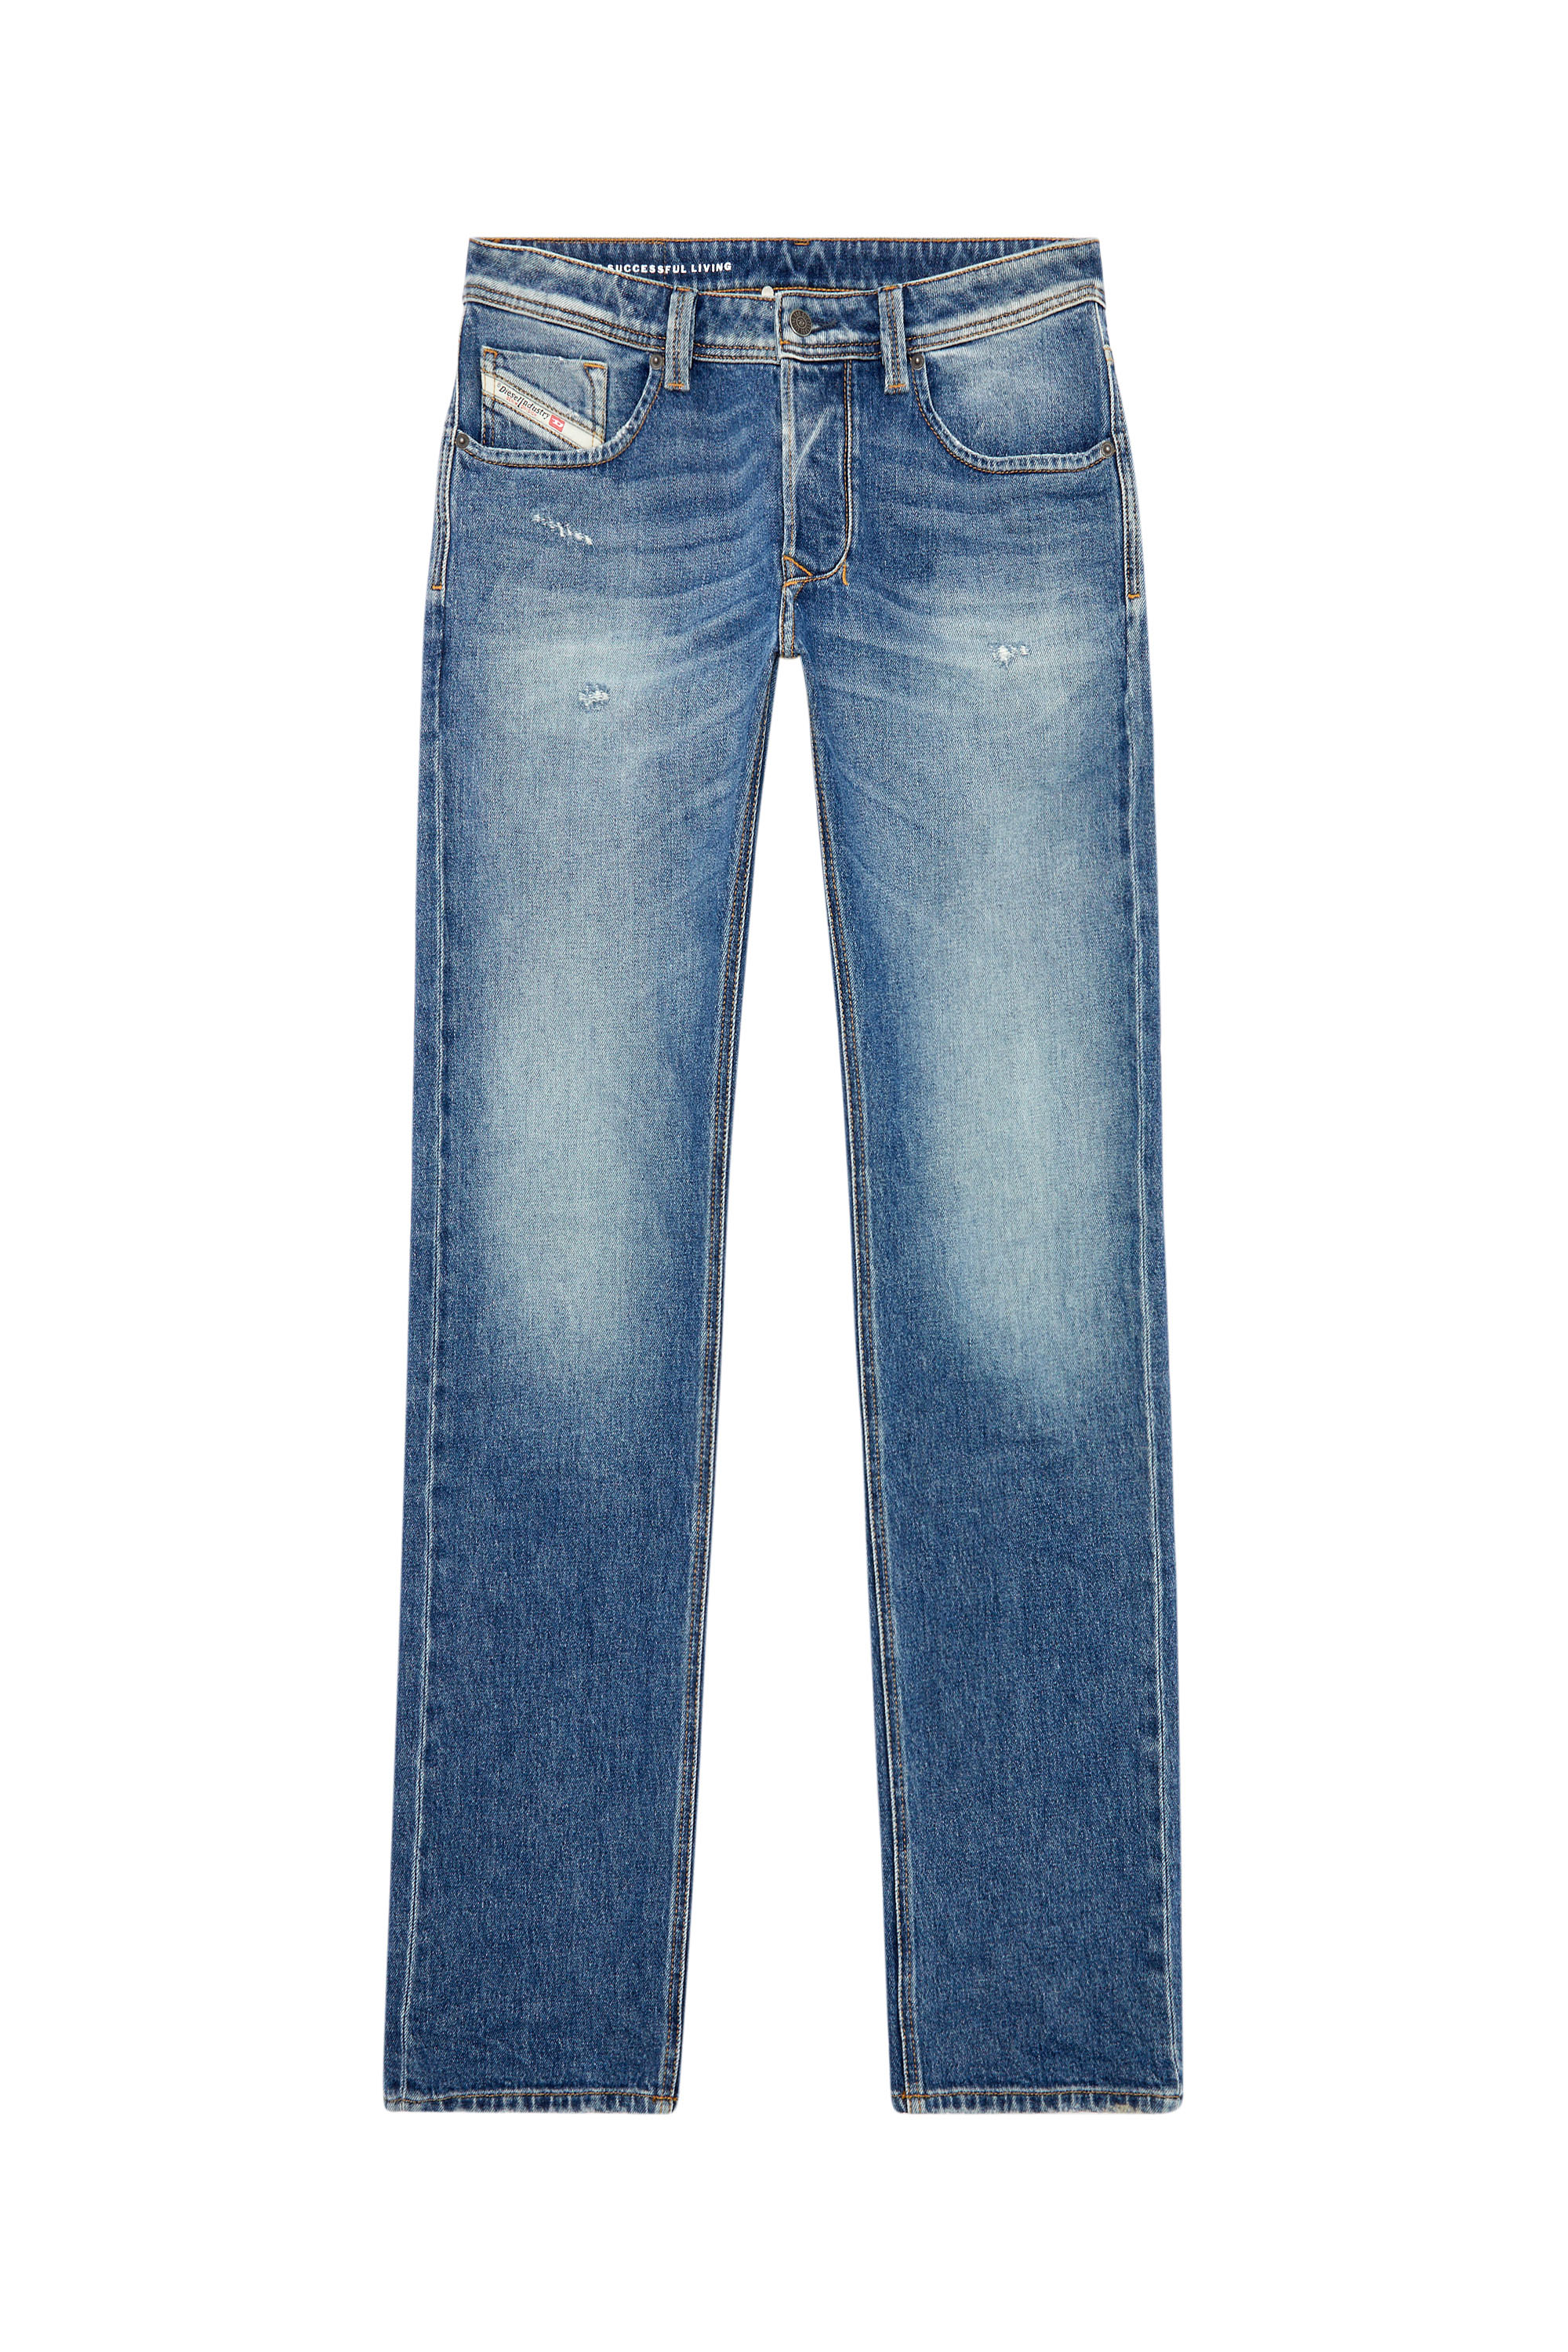 Diesel - Straight Jeans 1985 Larkee 09I16, Medium blue - Image 5